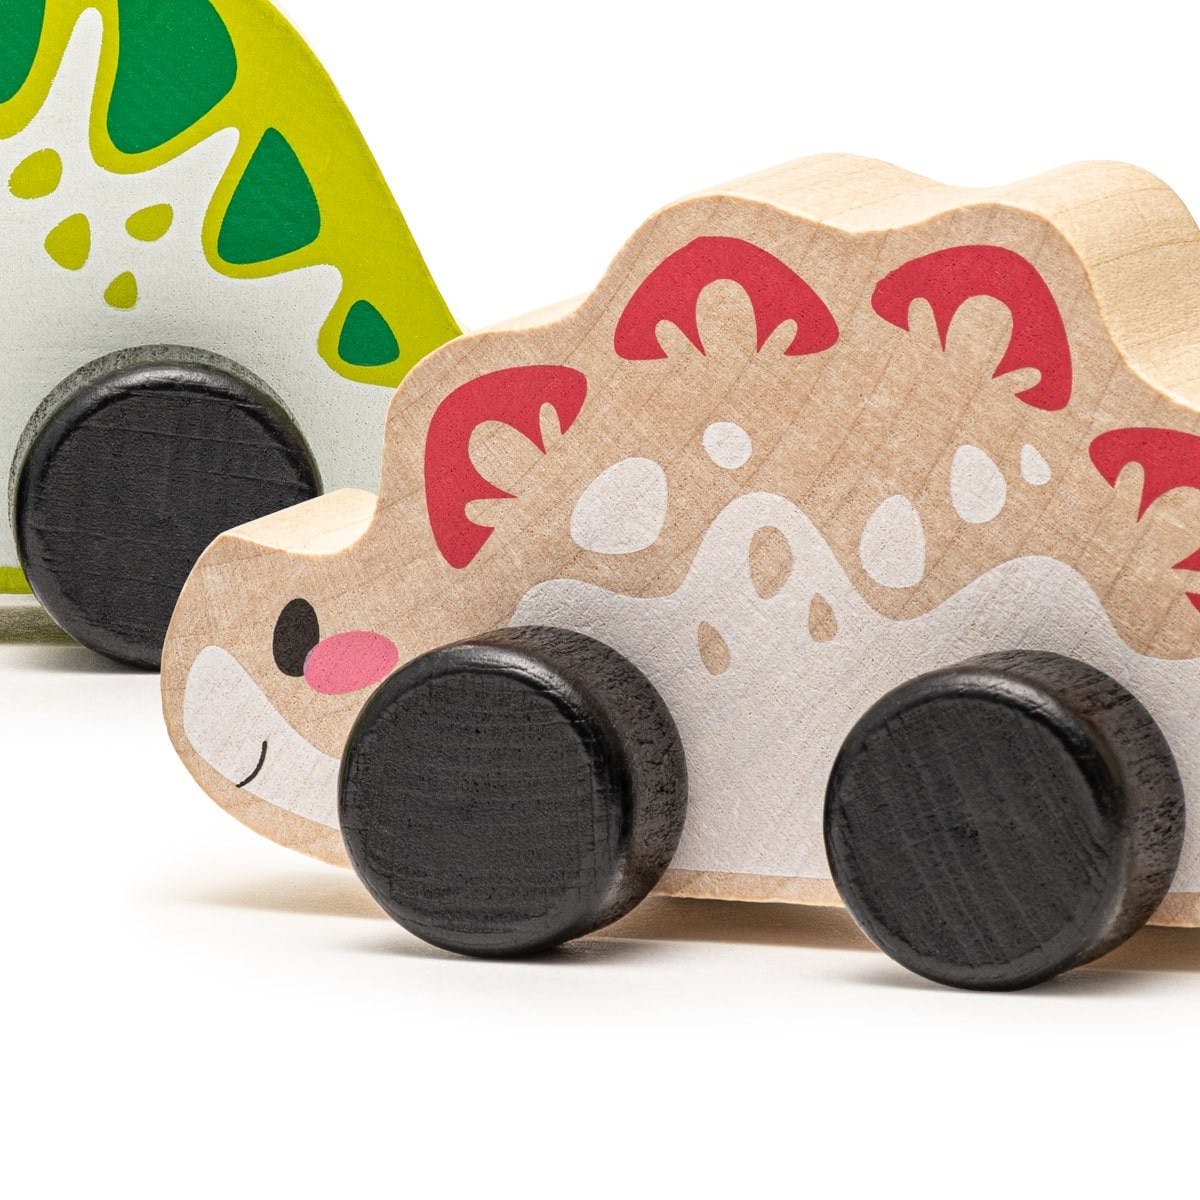 Cubika - Wooden toy set "Joyful dinos" - Playlaan